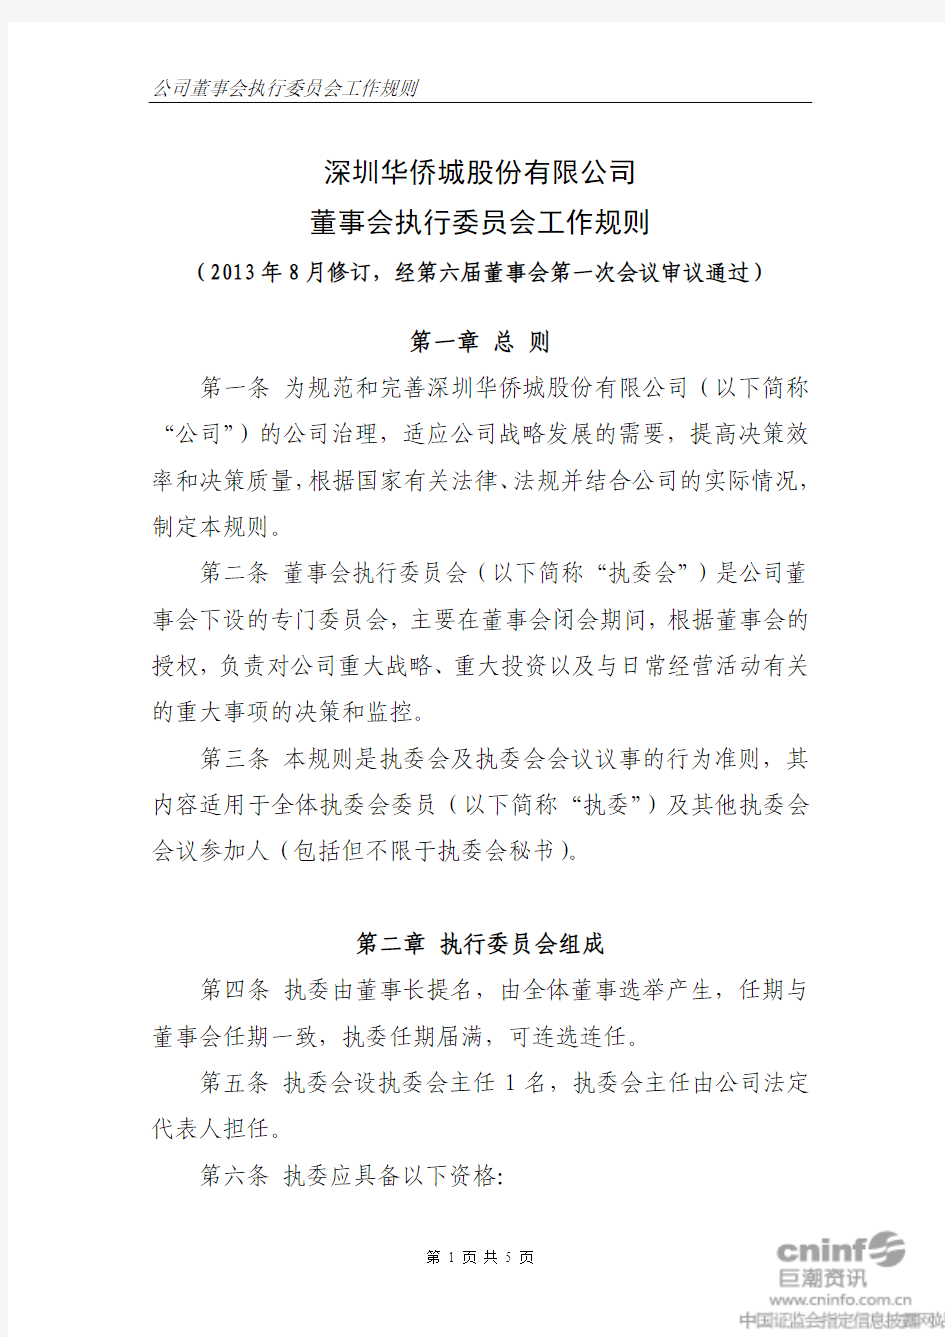 深圳华侨城股份有限公司 董事会执行委员会工作规则